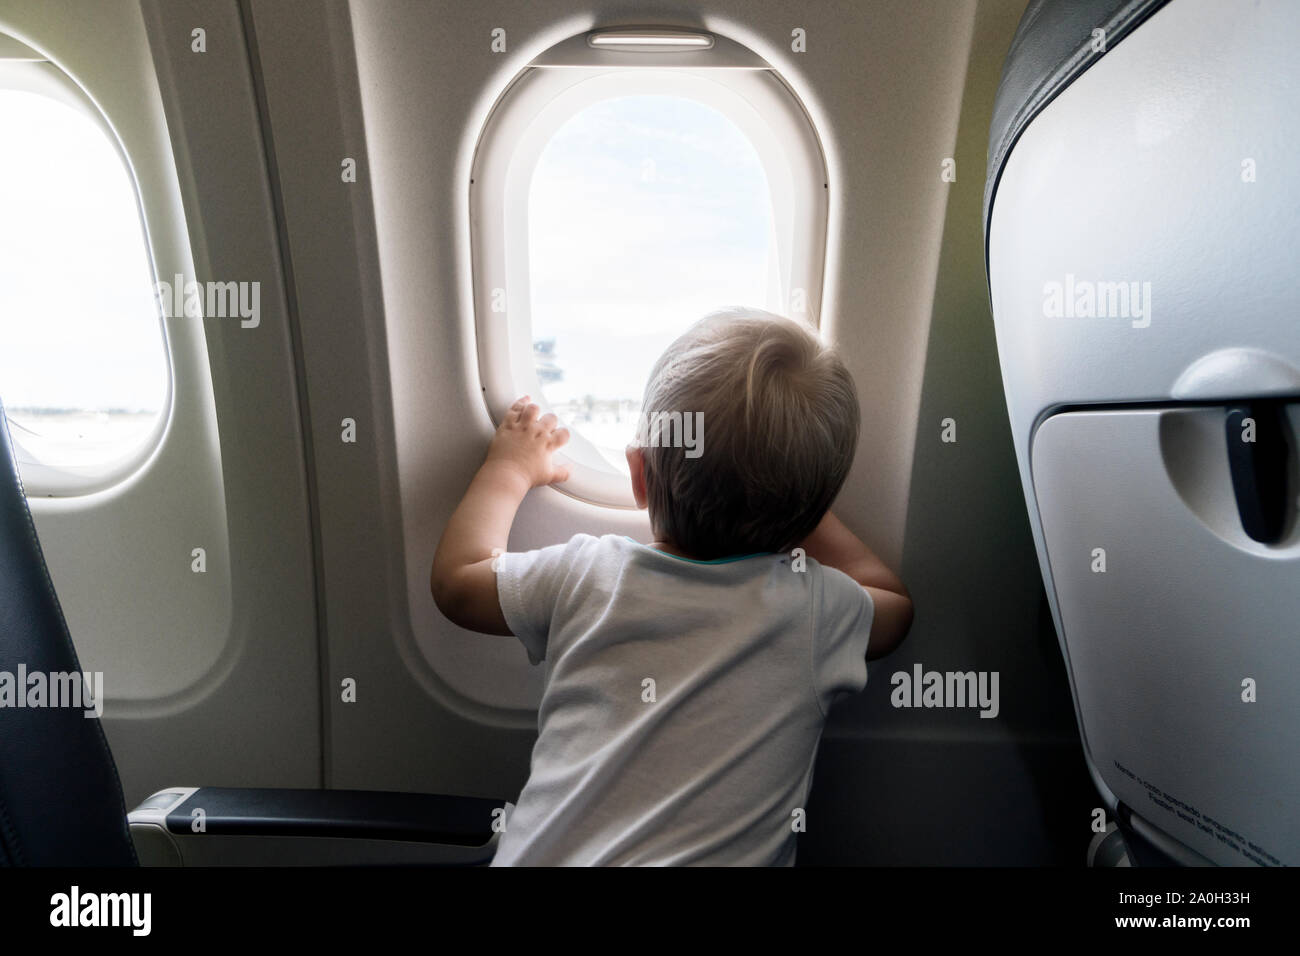 Ein Jahr alten baby boy Neugierig durch das Flugzeug Fenster Stockfoto